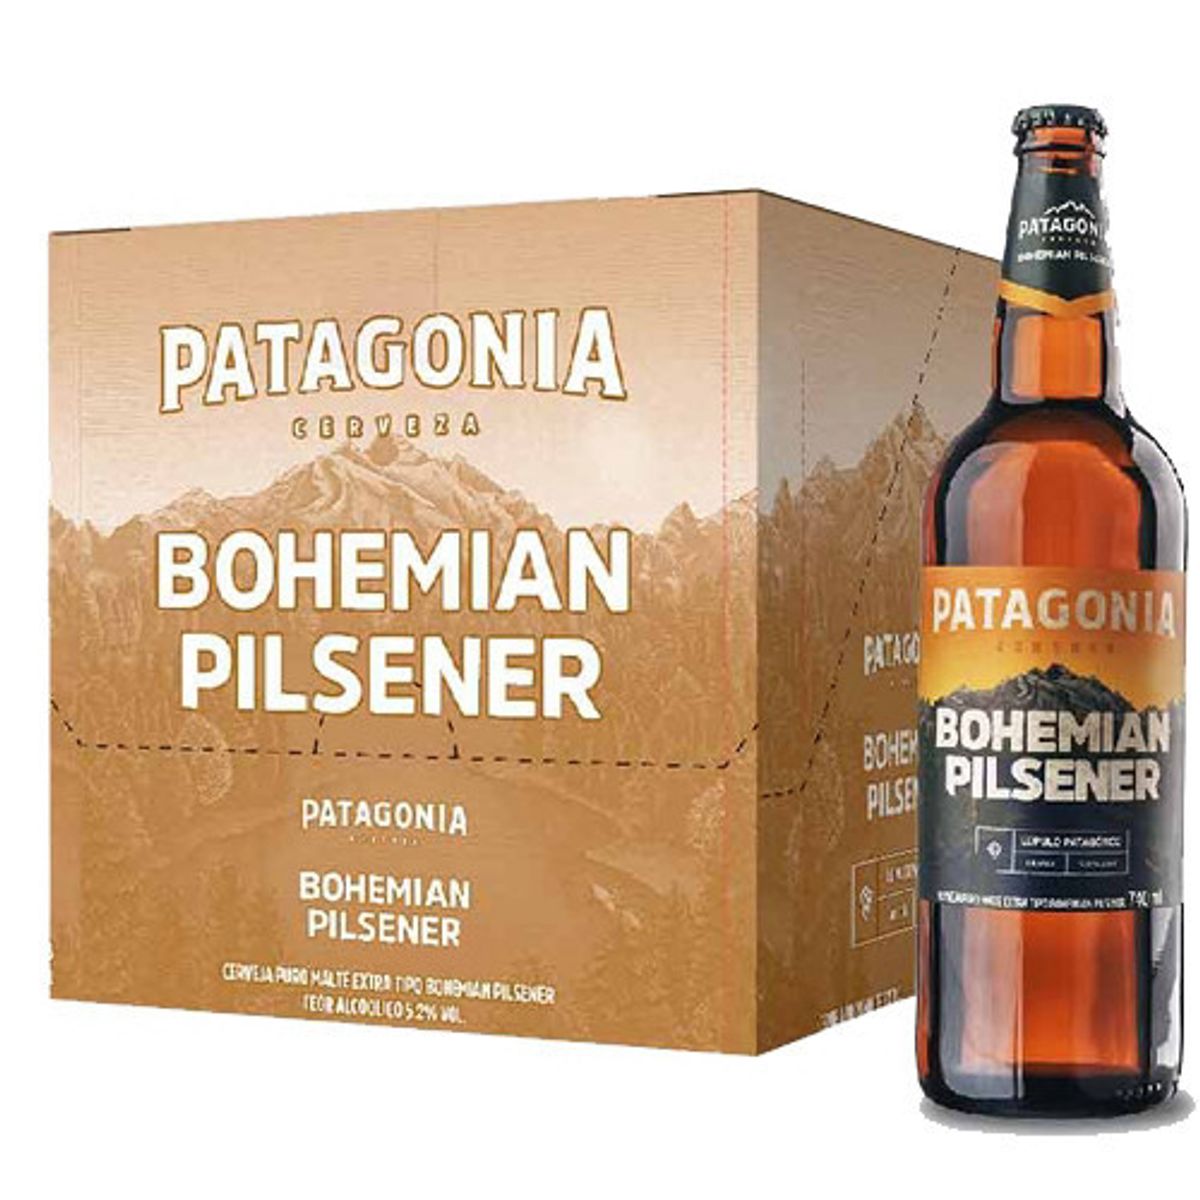 All Beers: Cerveja Patagonia chega ao Brasil